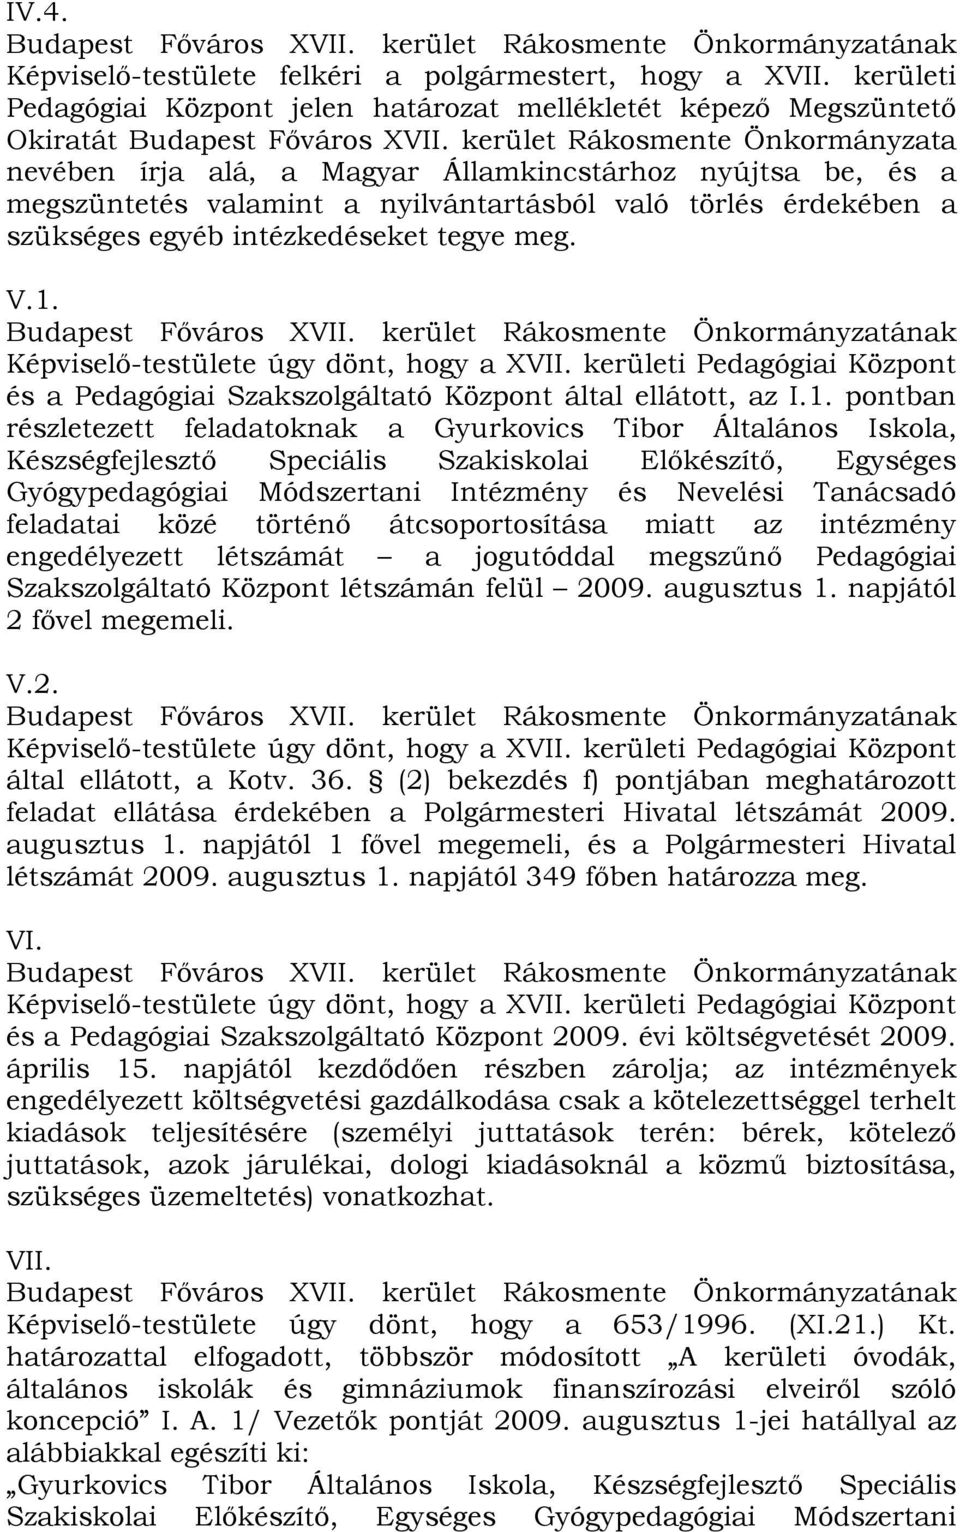 V.1. Képviselő-testülete úgy dönt, hogy a XVII. kerületi Pedagógiai Központ és a Pedagógiai Szakszolgáltató Központ által ellátott, az I.1. pontban részletezett feladatoknak a Gyurkovics Tibor